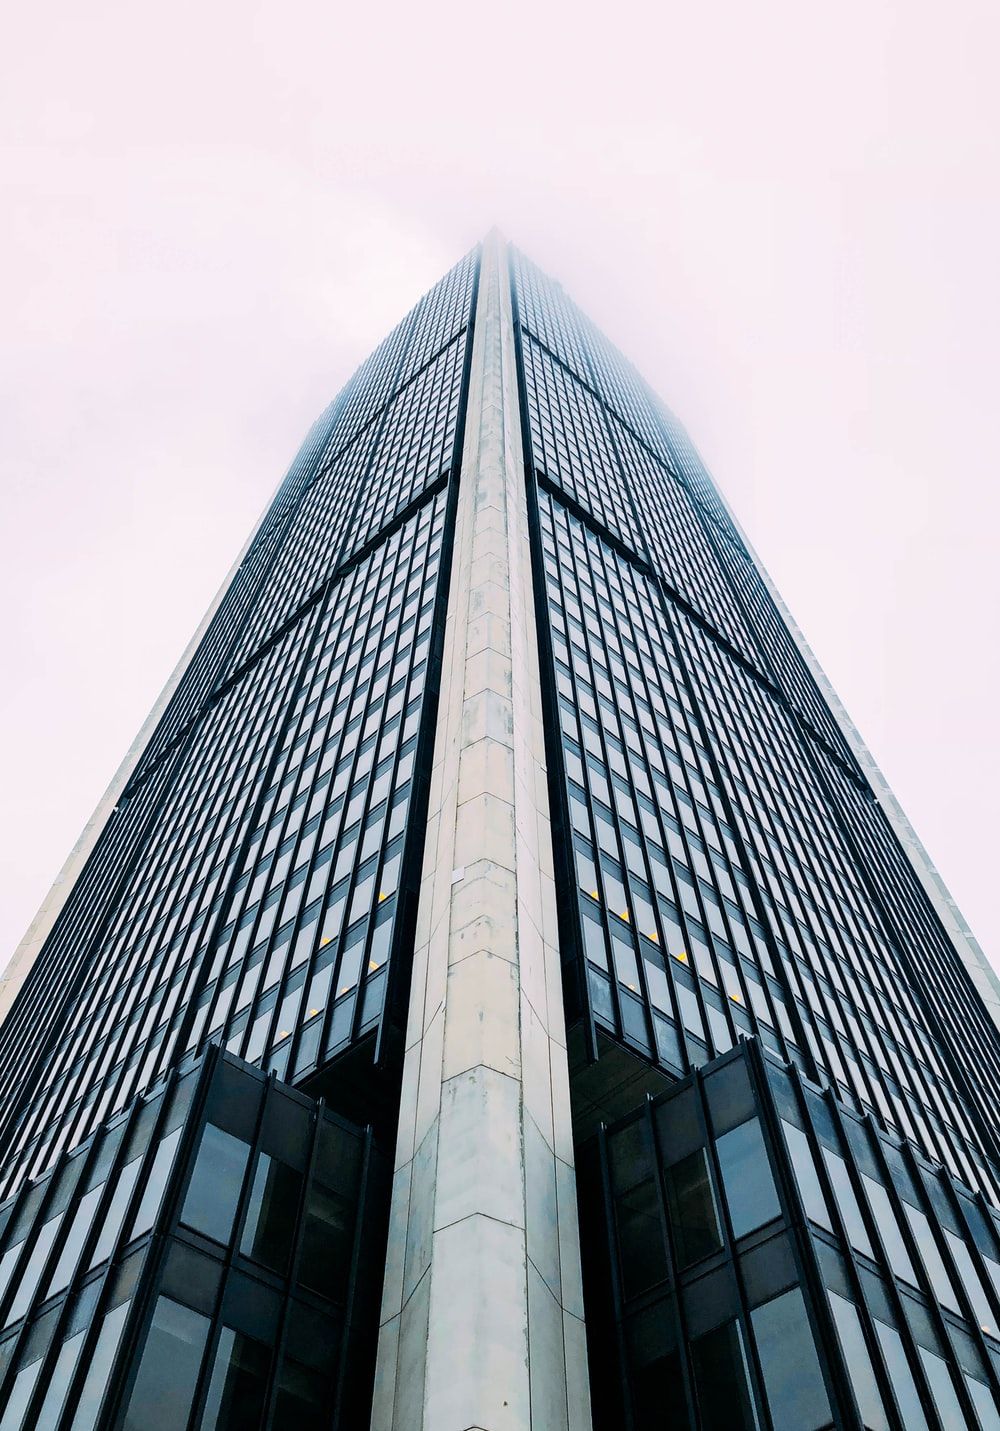 Skyscraper Picture. Download Free Image